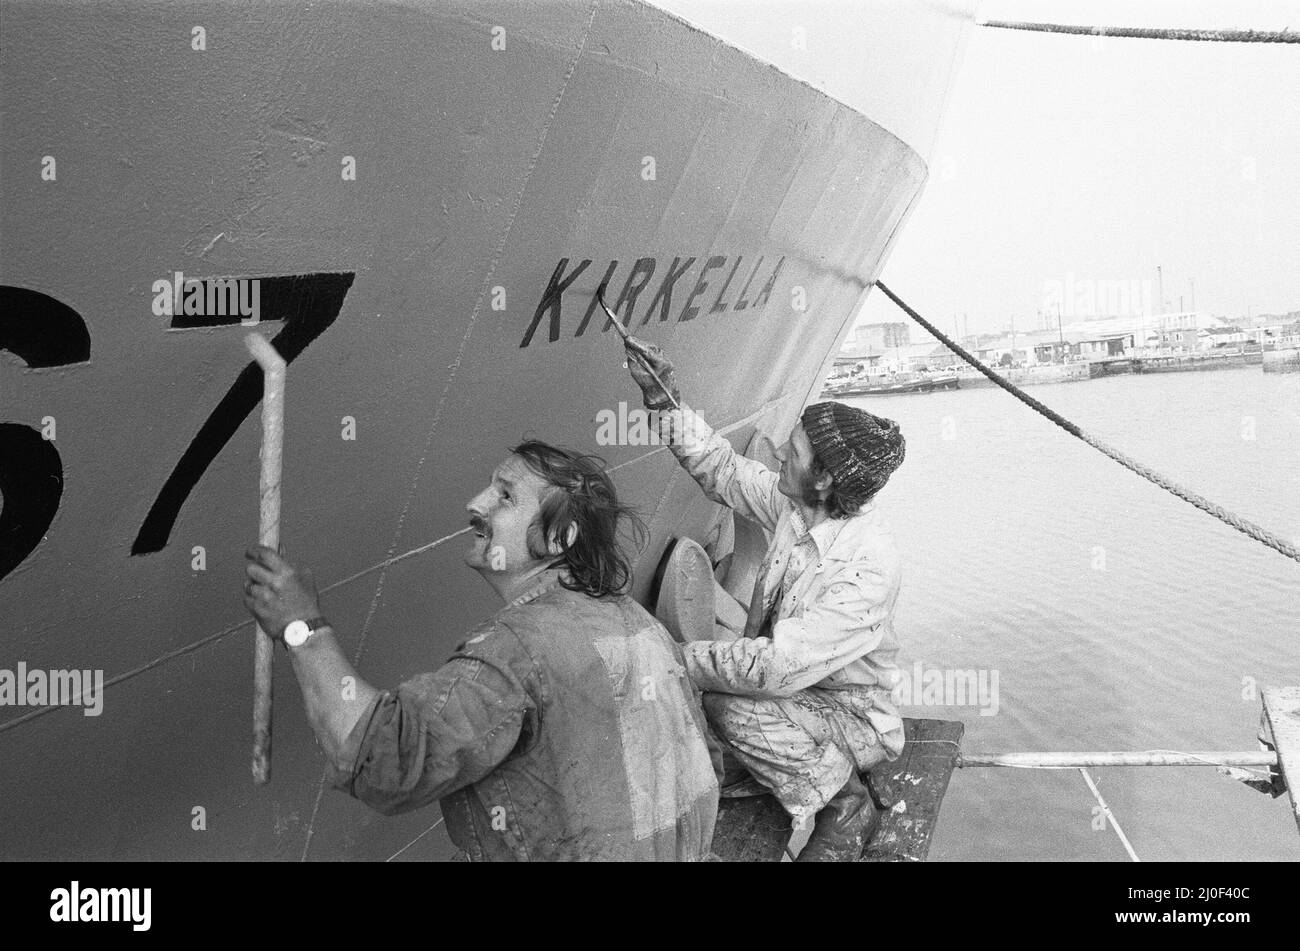 L'équipage du chalutier de poupe de Hull, Kirkella, vu ici, repeint le nom et le numéro des navires. 28th août 1979 Banque D'Images